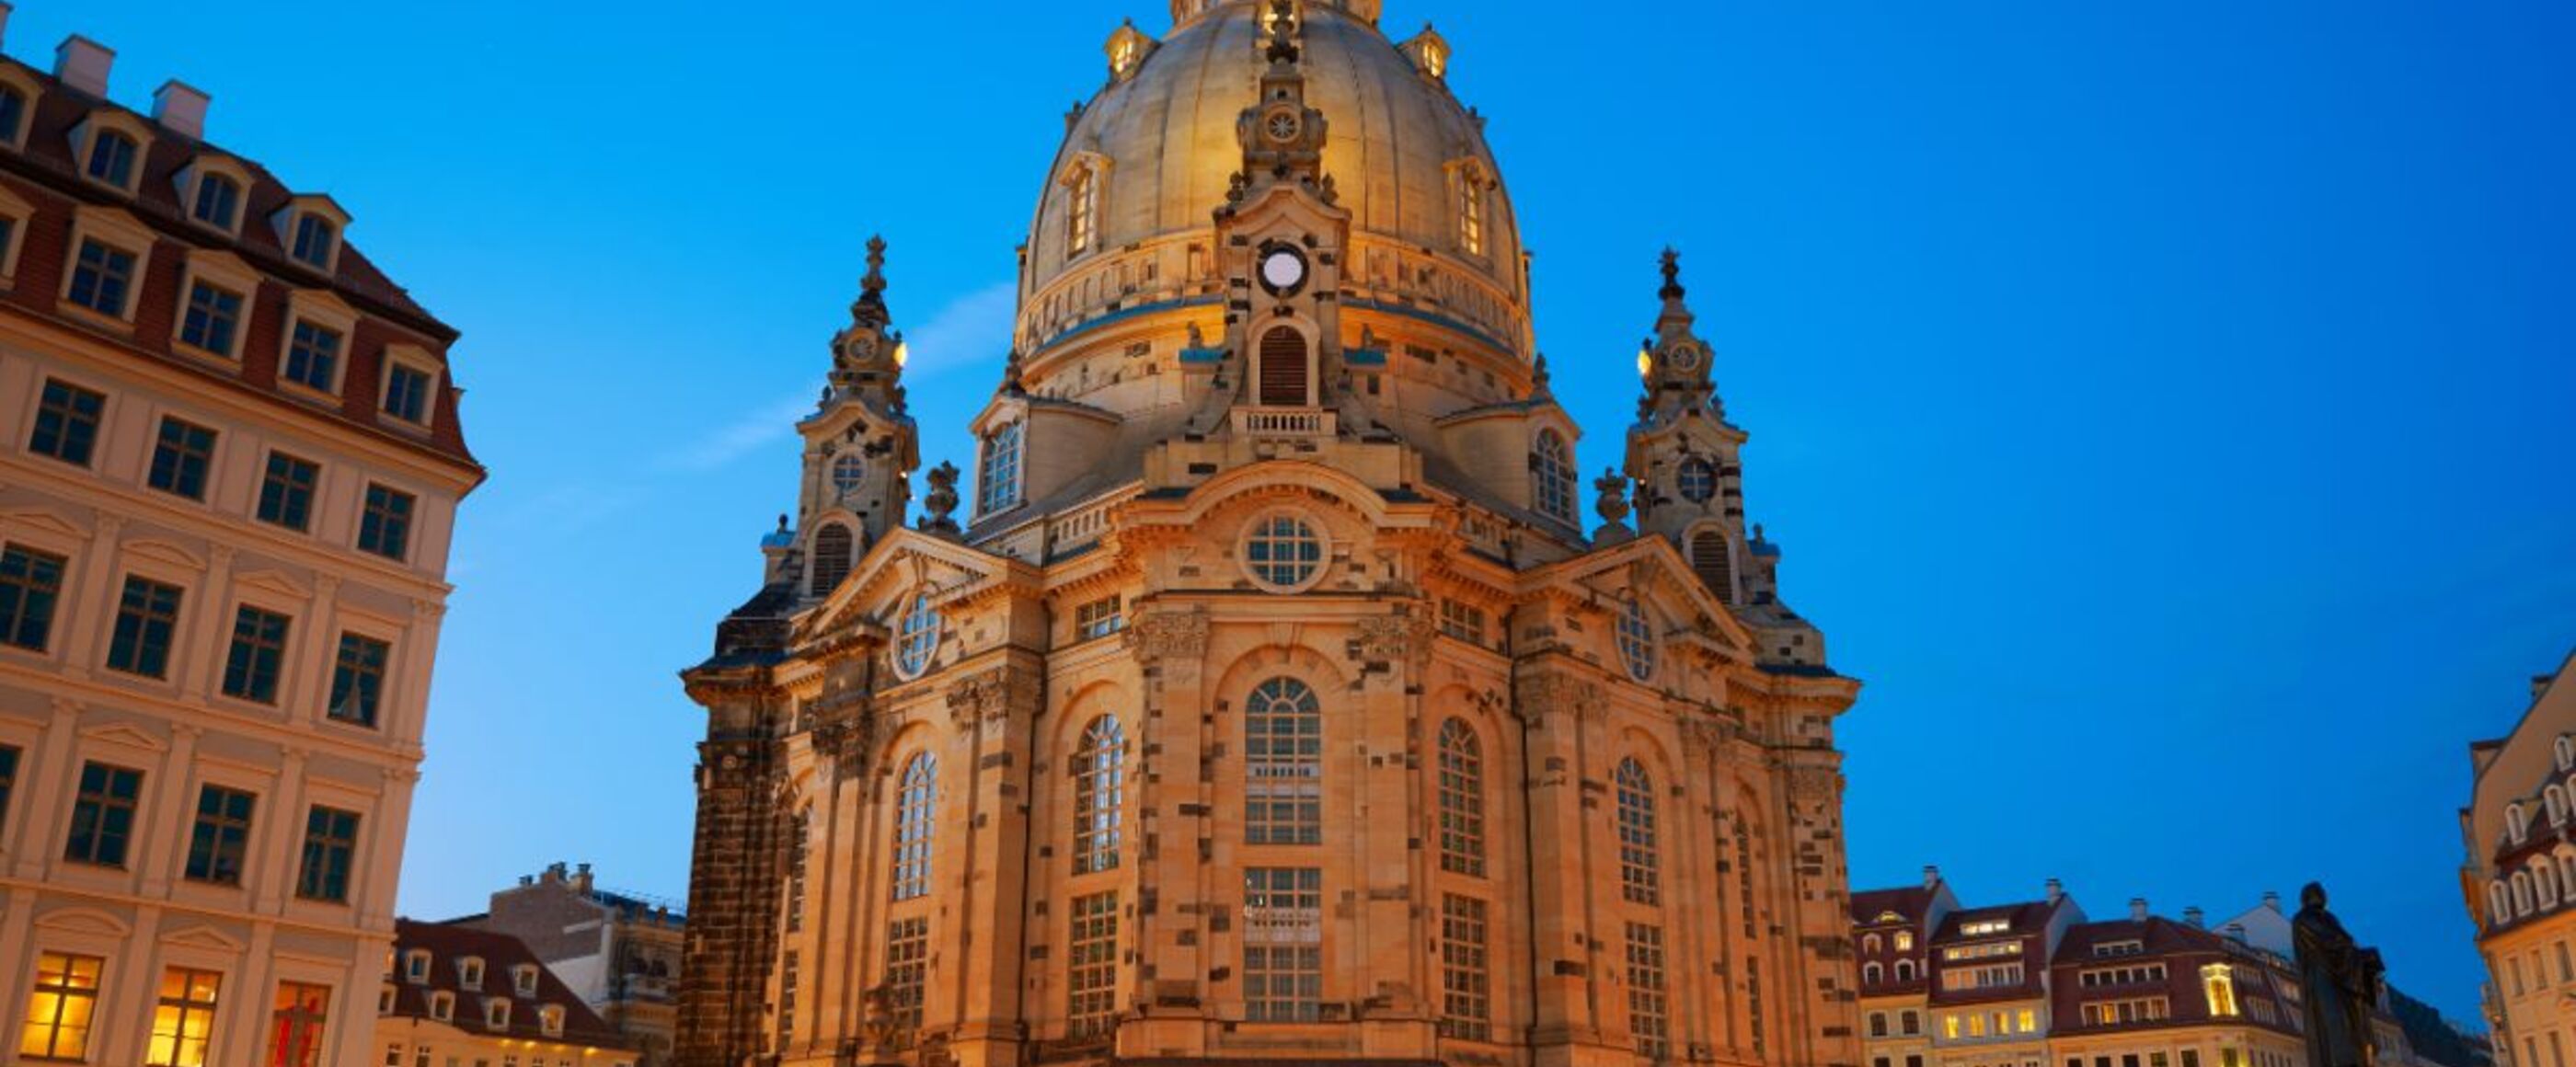 Die Frauenkirche Dresden erhebt sich gegen den blau leuchtenden Himmel. Von unten leuchten die Kirche und umliegenden Häuser golden im Licht der Laternen.